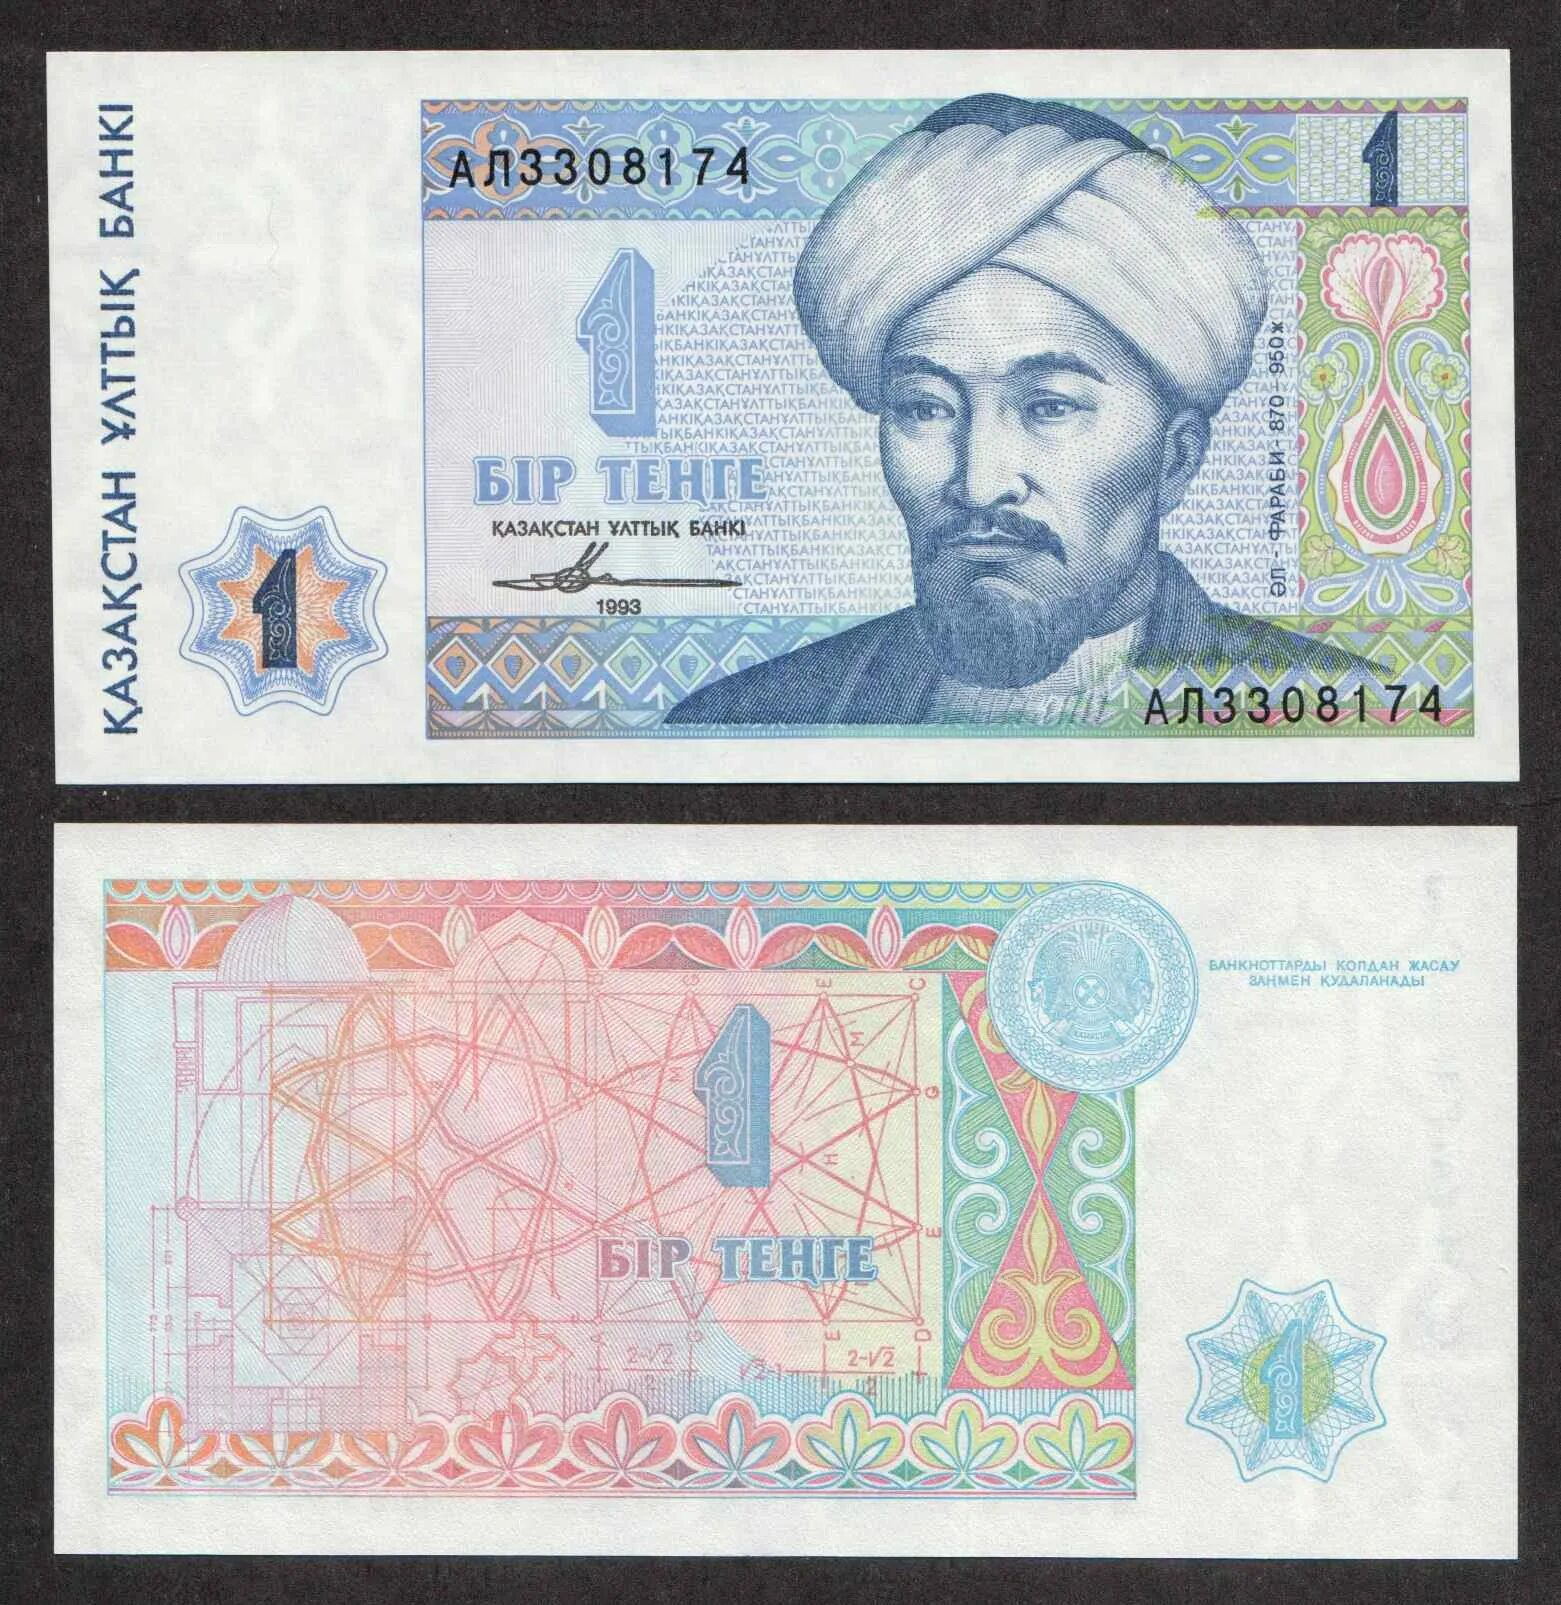 Тенге купюры. Старая валюта Казахстана. Самая большая купюра тенге. Тенге с Назарбаевым. Песня тенге тенге мем